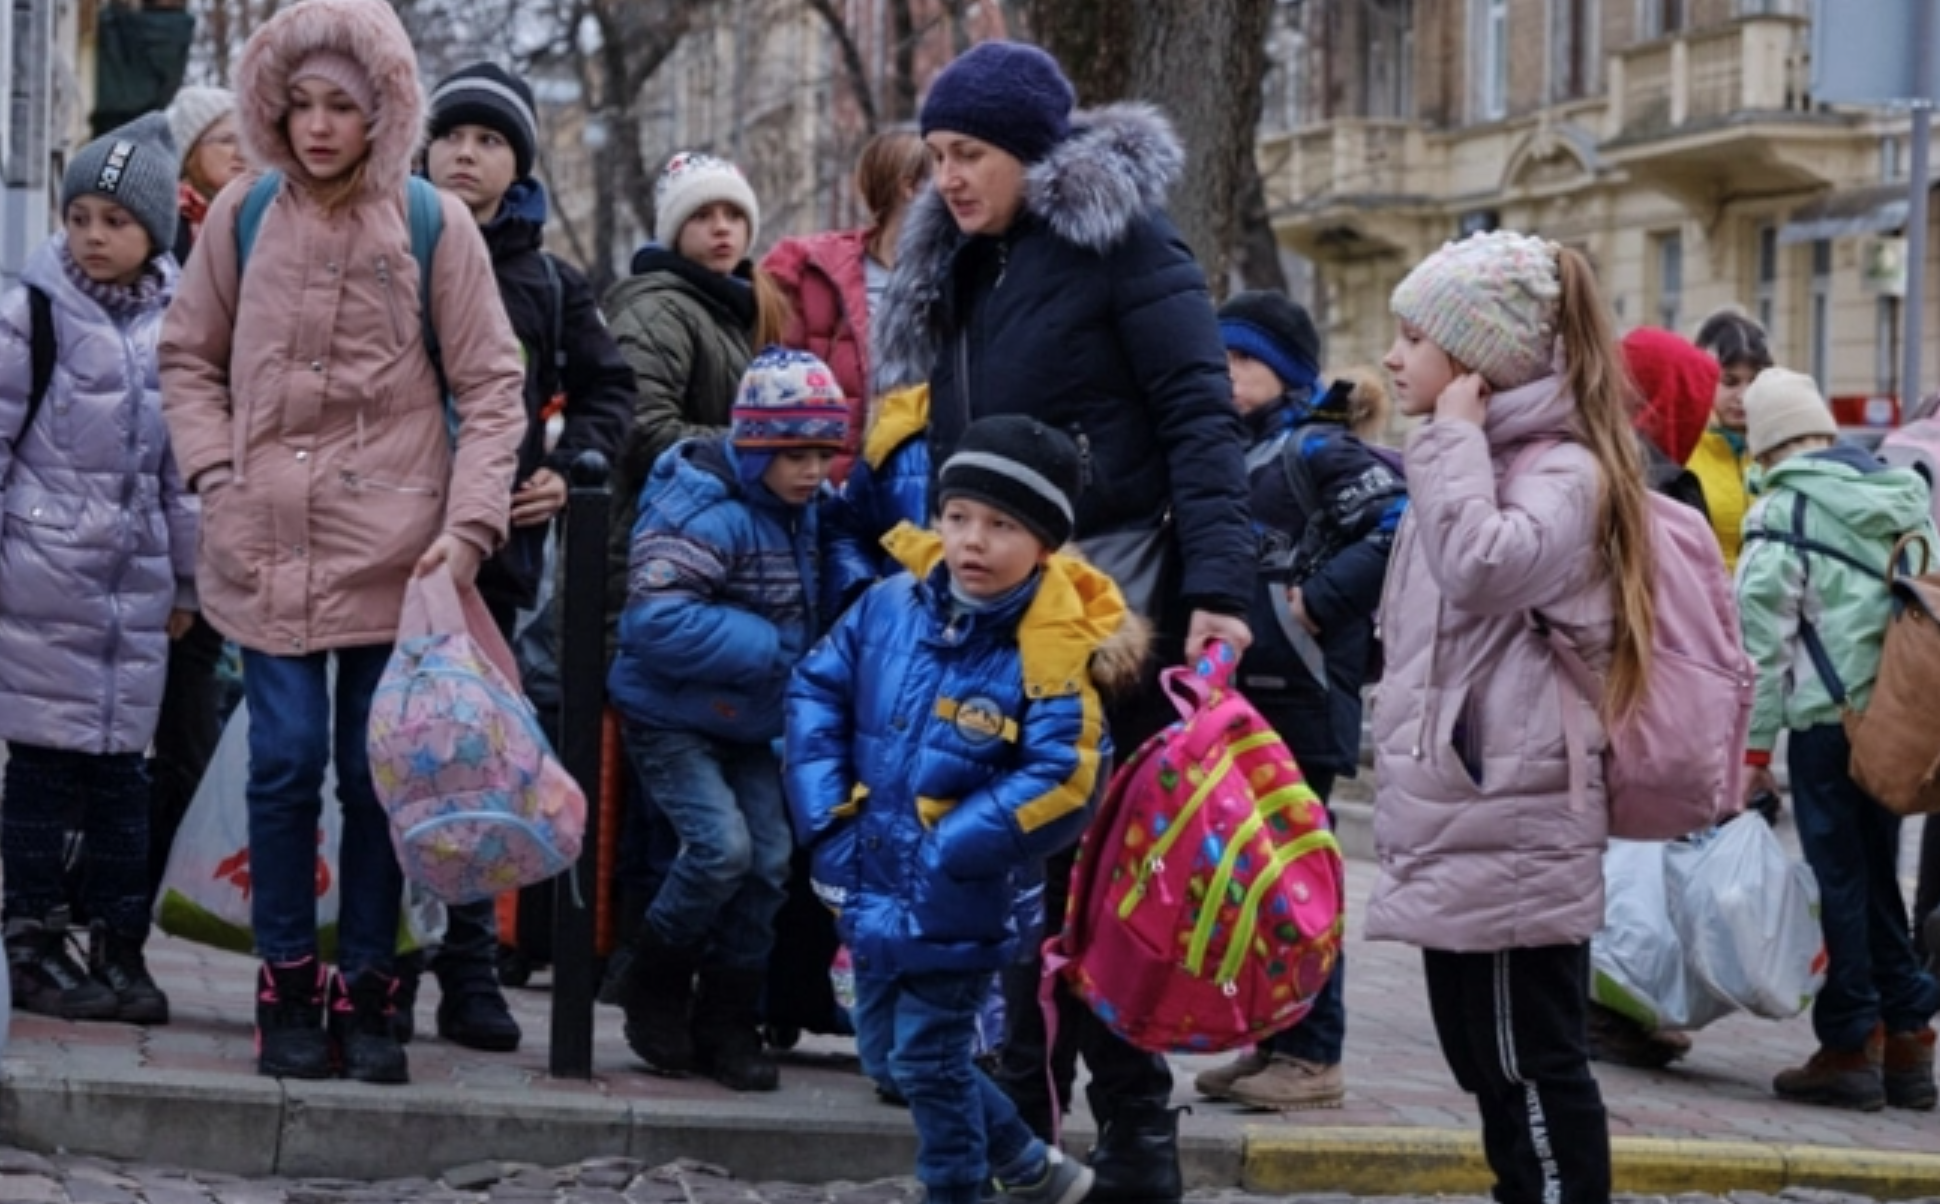 Órfãos sendo resgatados na Ucrânia